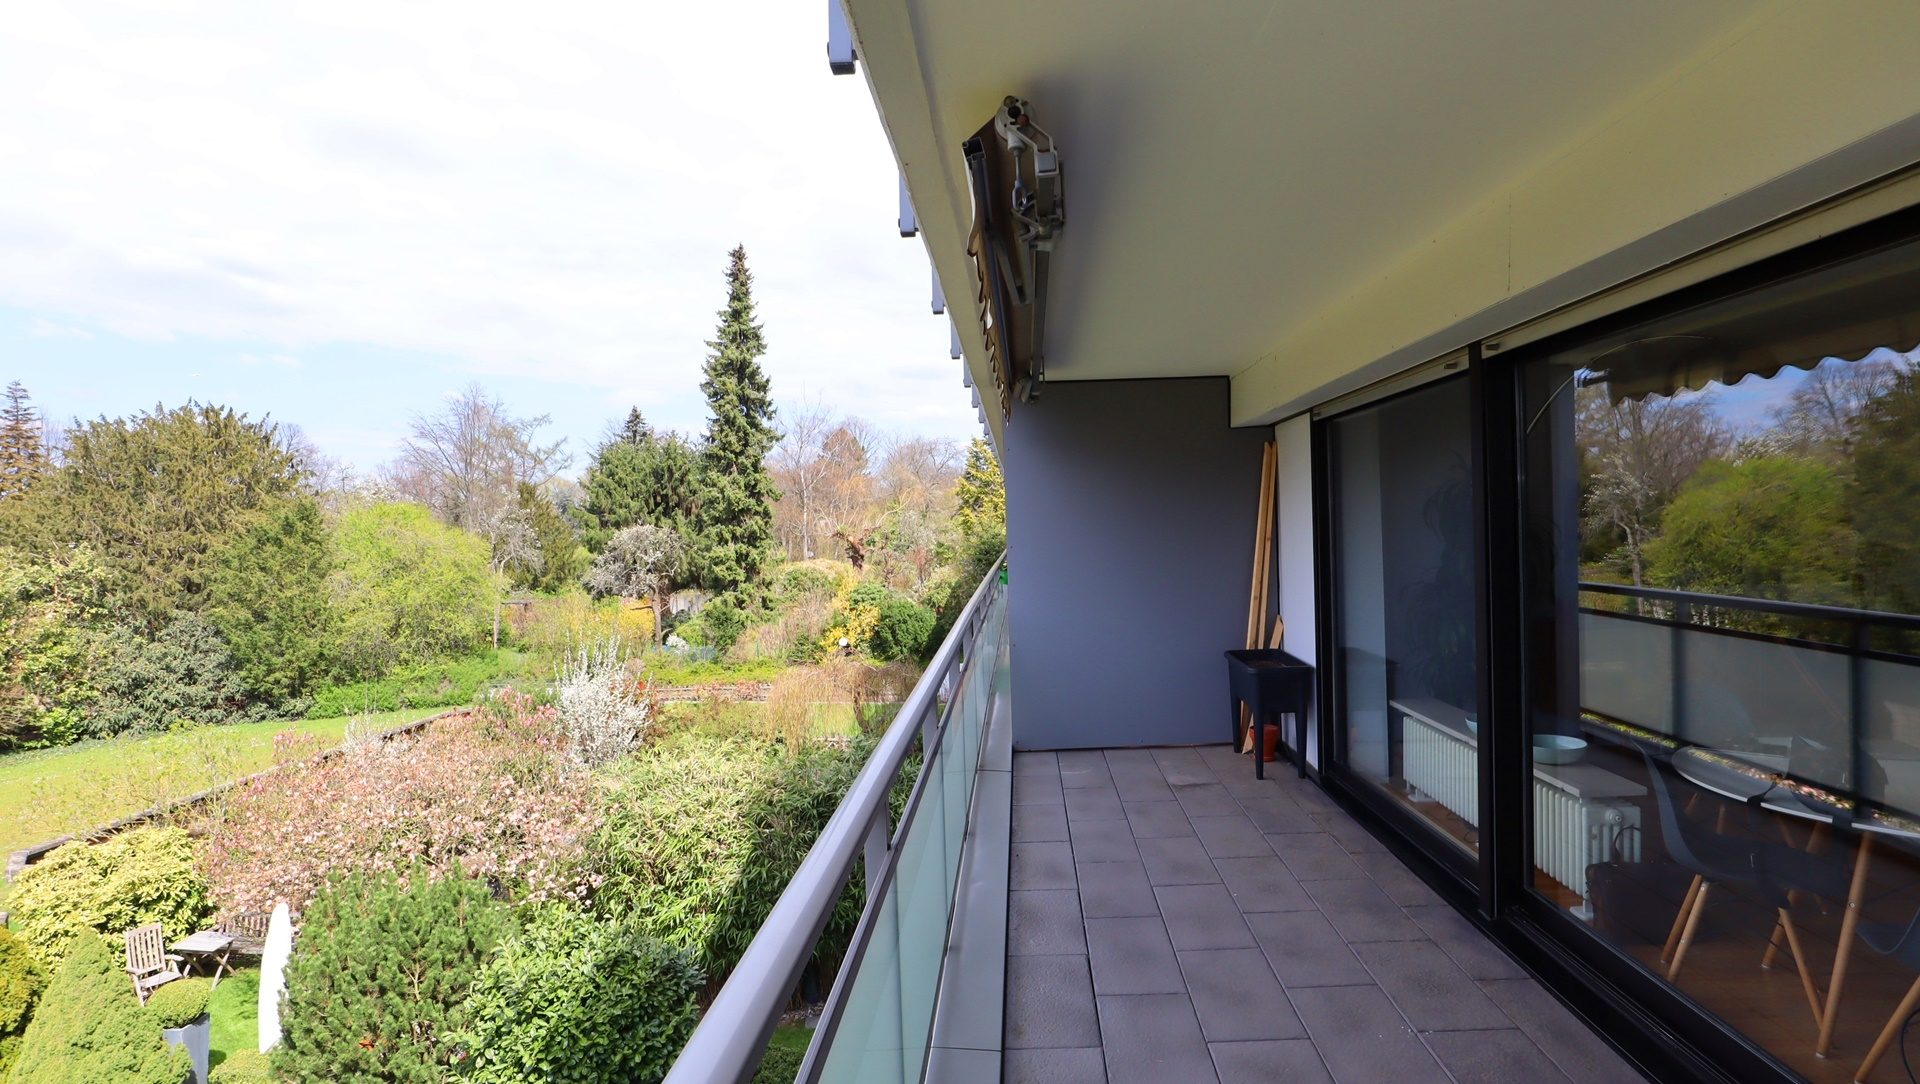 Böcker Wohnimmobilien - Immobilienangebot - Düsseldorf - Alle - Topmoderne 2-Zimmer Wohnung mit großem Balkon und Blick ins Grüne